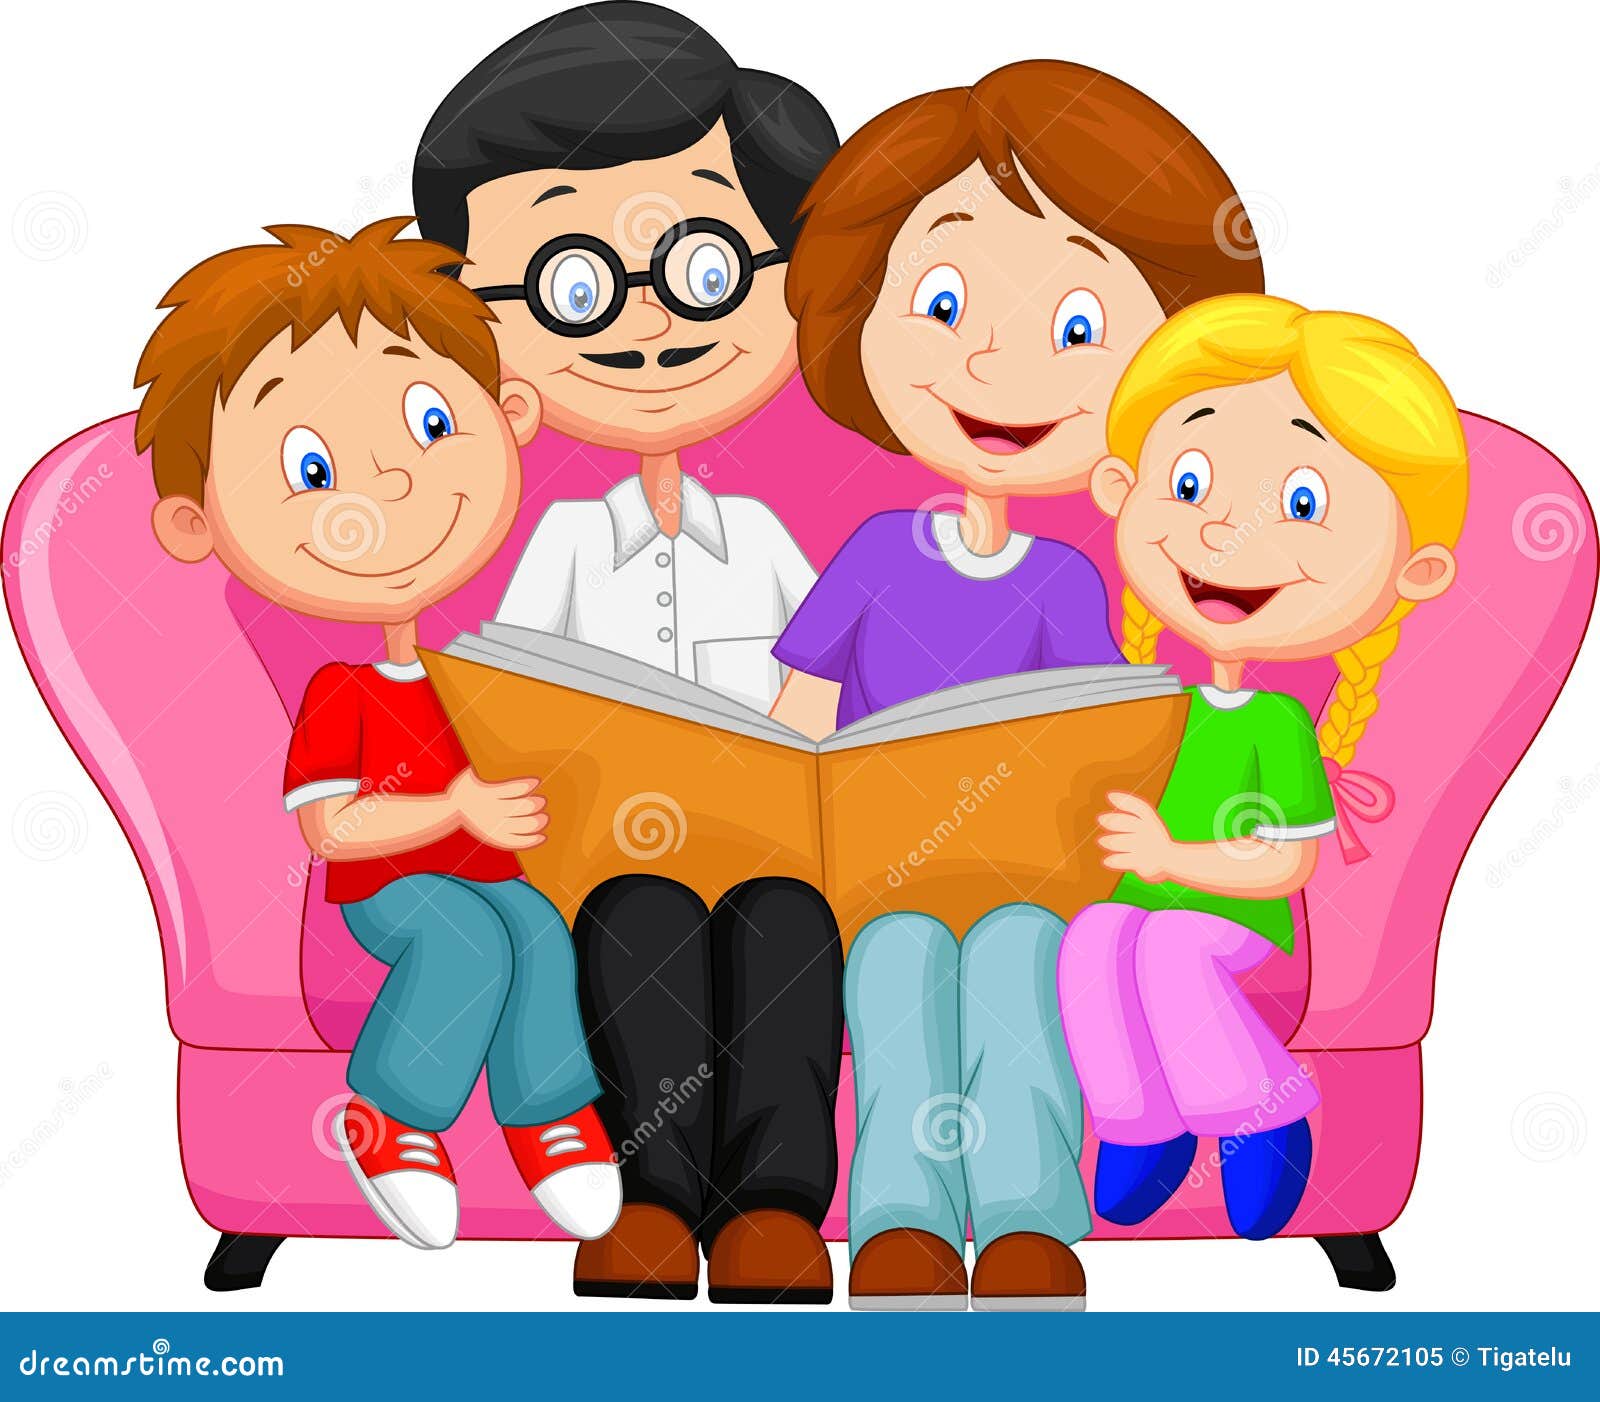 family literacy clipart - photo #4